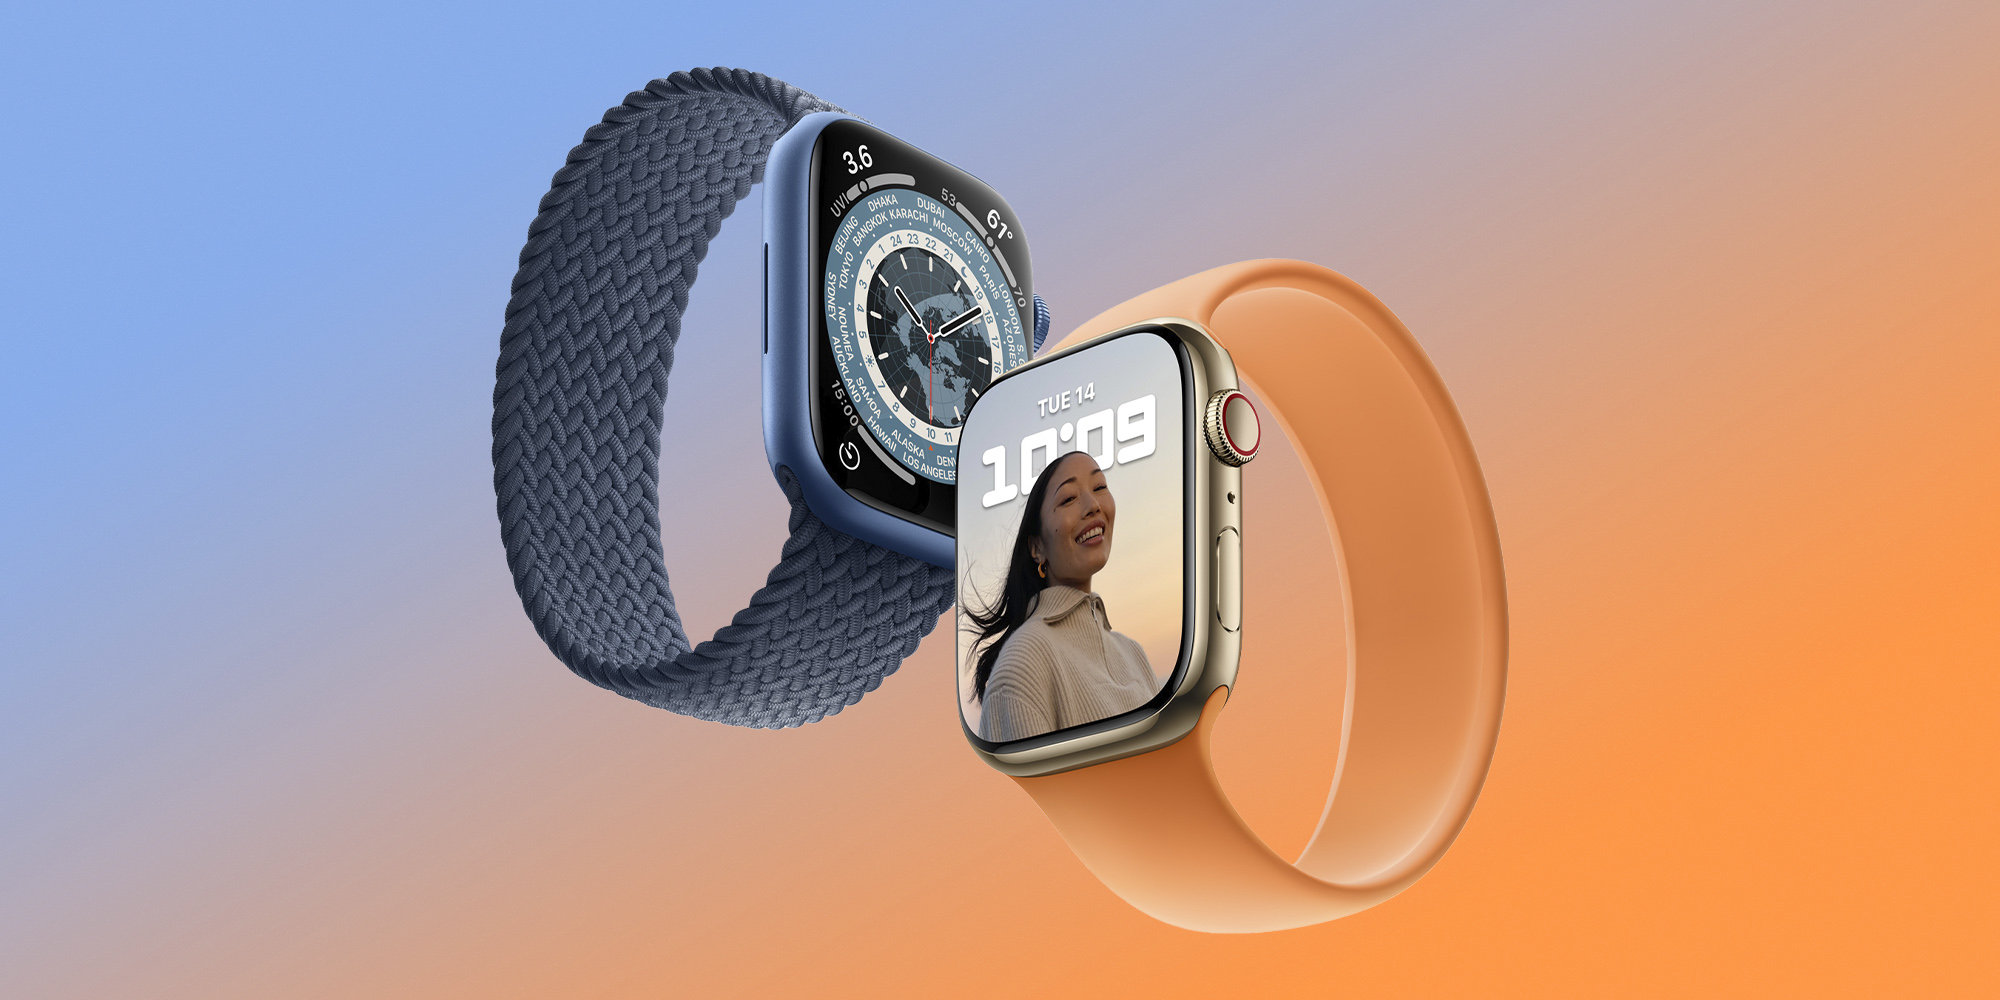 Cellular Apple Watch: Is it worth it?